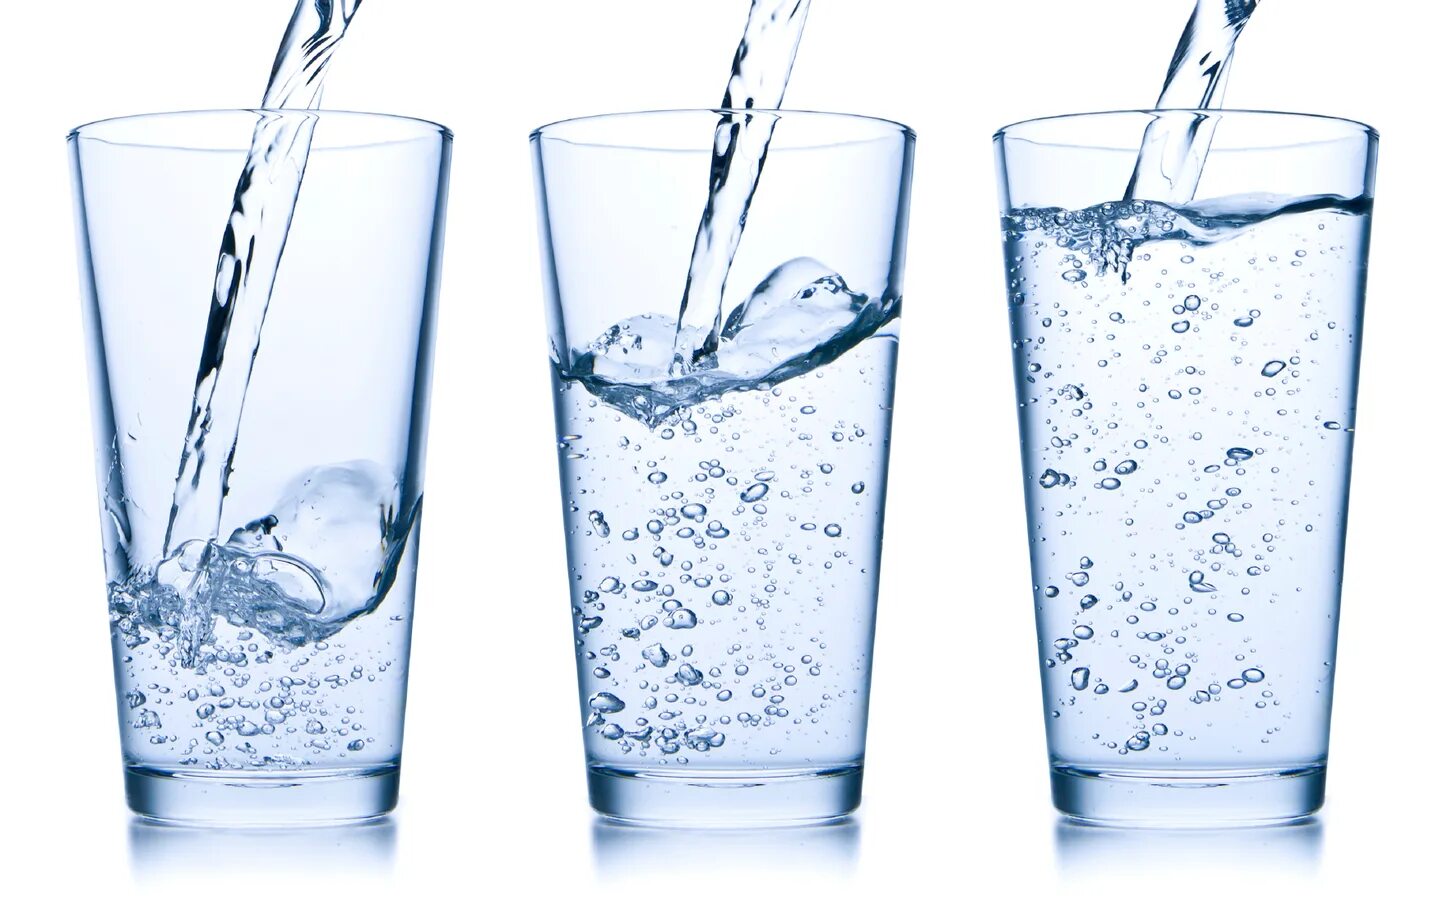 Вода 1 2 3. Стакан воды. Стакан газированной воды. Три стакана с водой. Минералка в стакане.